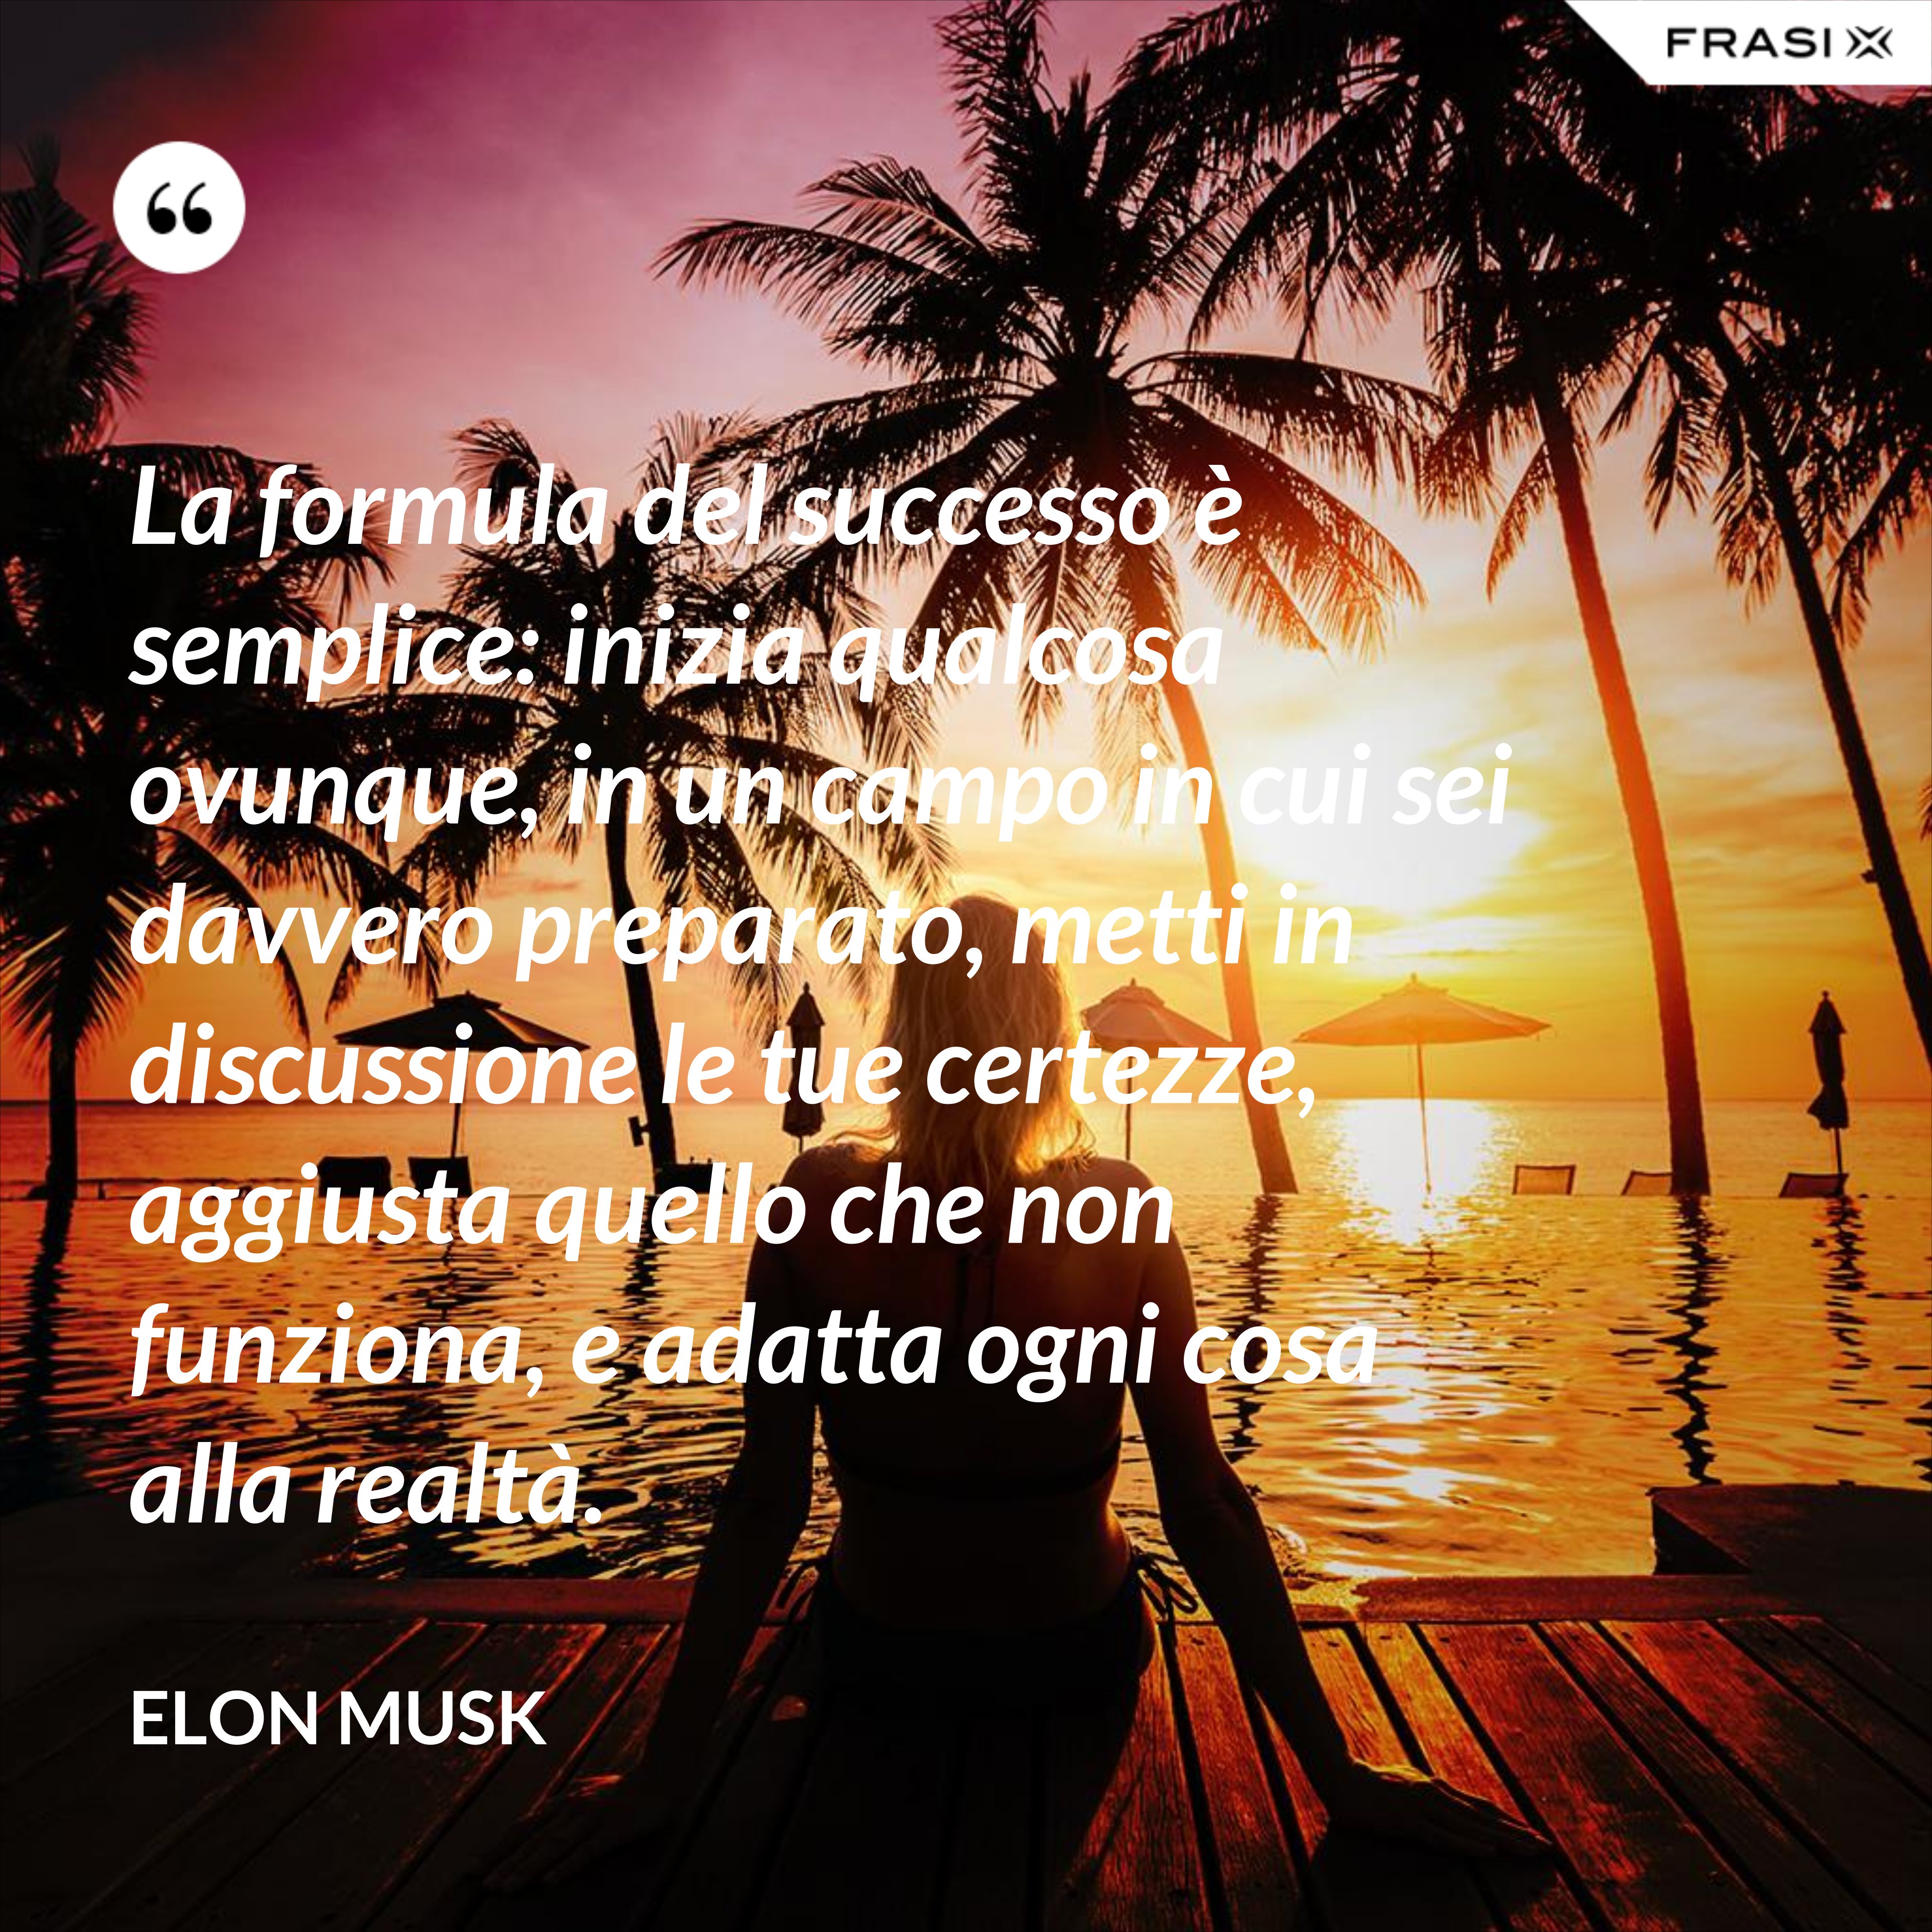 La formula del successo è semplice: inizia qualcosa ovunque, in un campo in cui sei davvero preparato, metti in discussione le tue certezze, aggiusta quello che non funziona, e adatta ogni cosa alla realtà. - Elon Musk